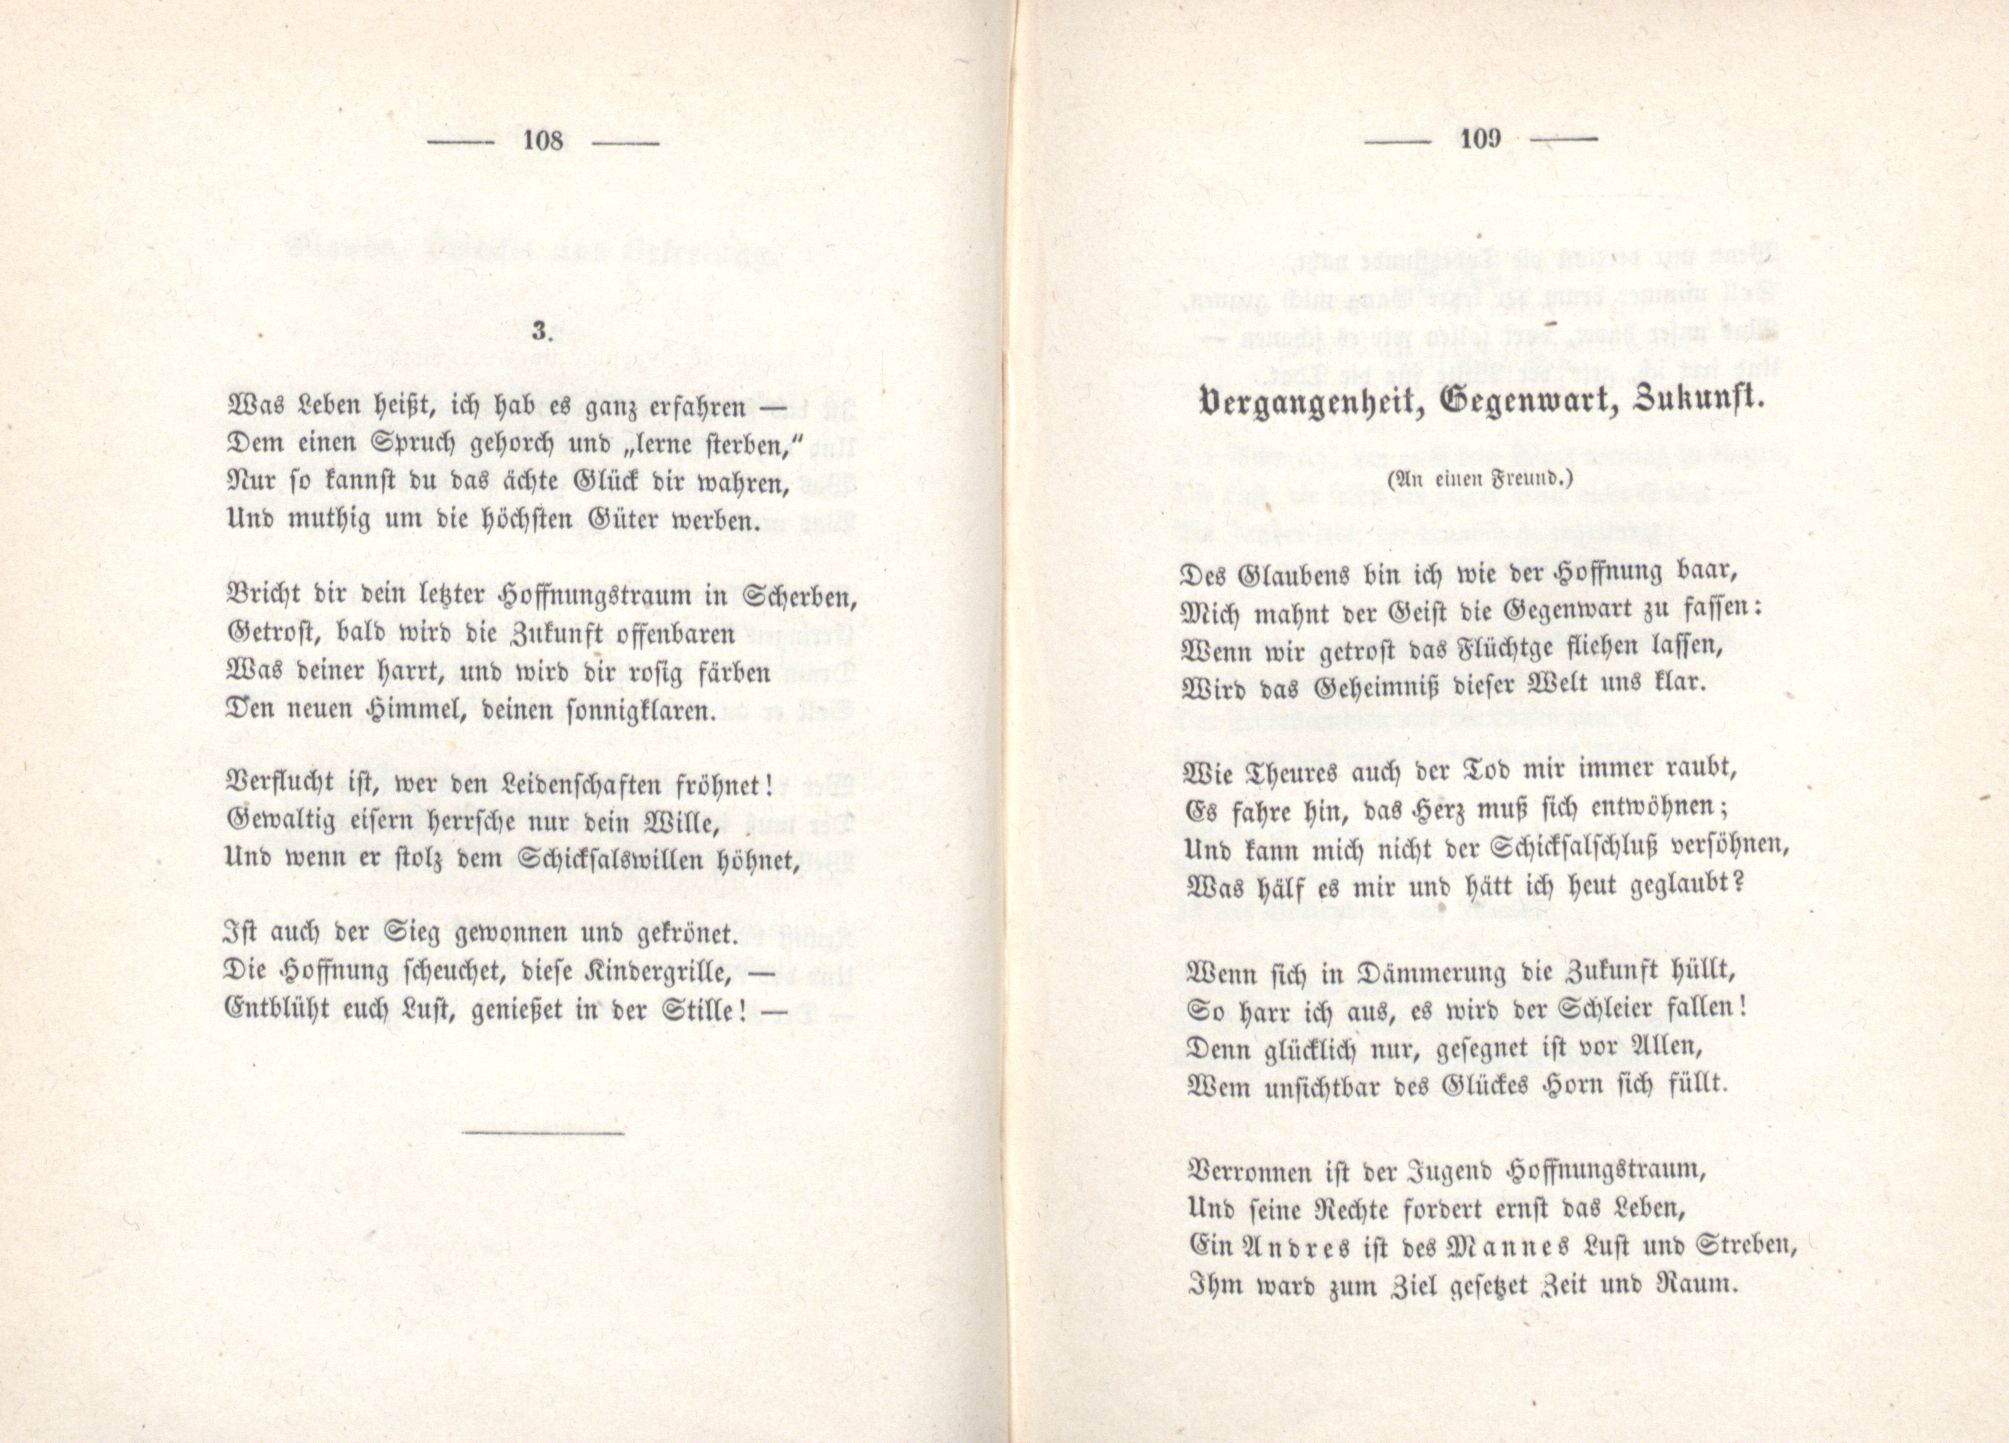 Vergangenheit, Gegenwart, Zukunft (1853) | 1. (108-109) Основной текст